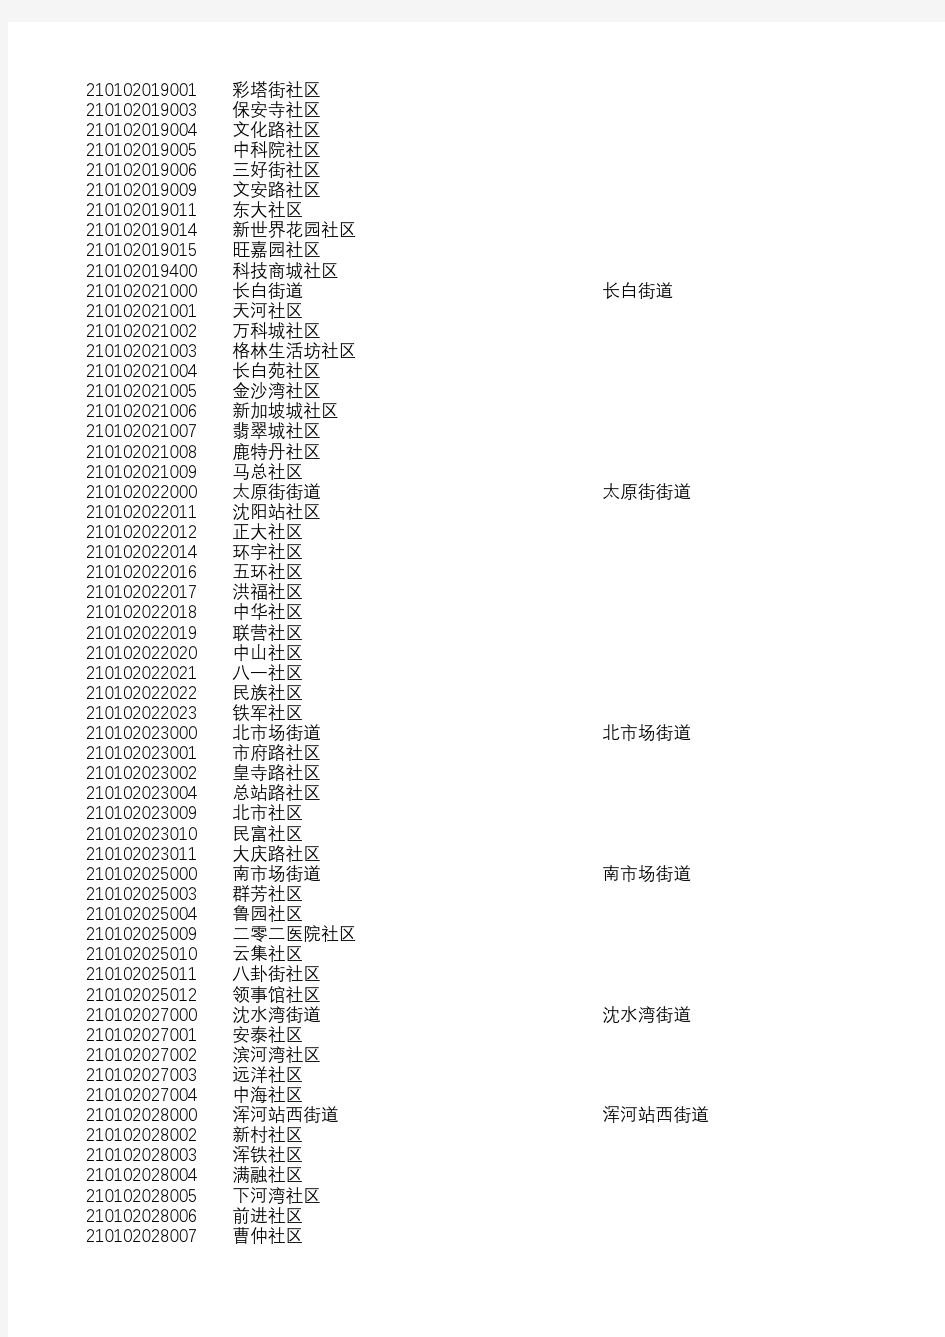 辽宁省行政区划代码(20180620发布不含大连)